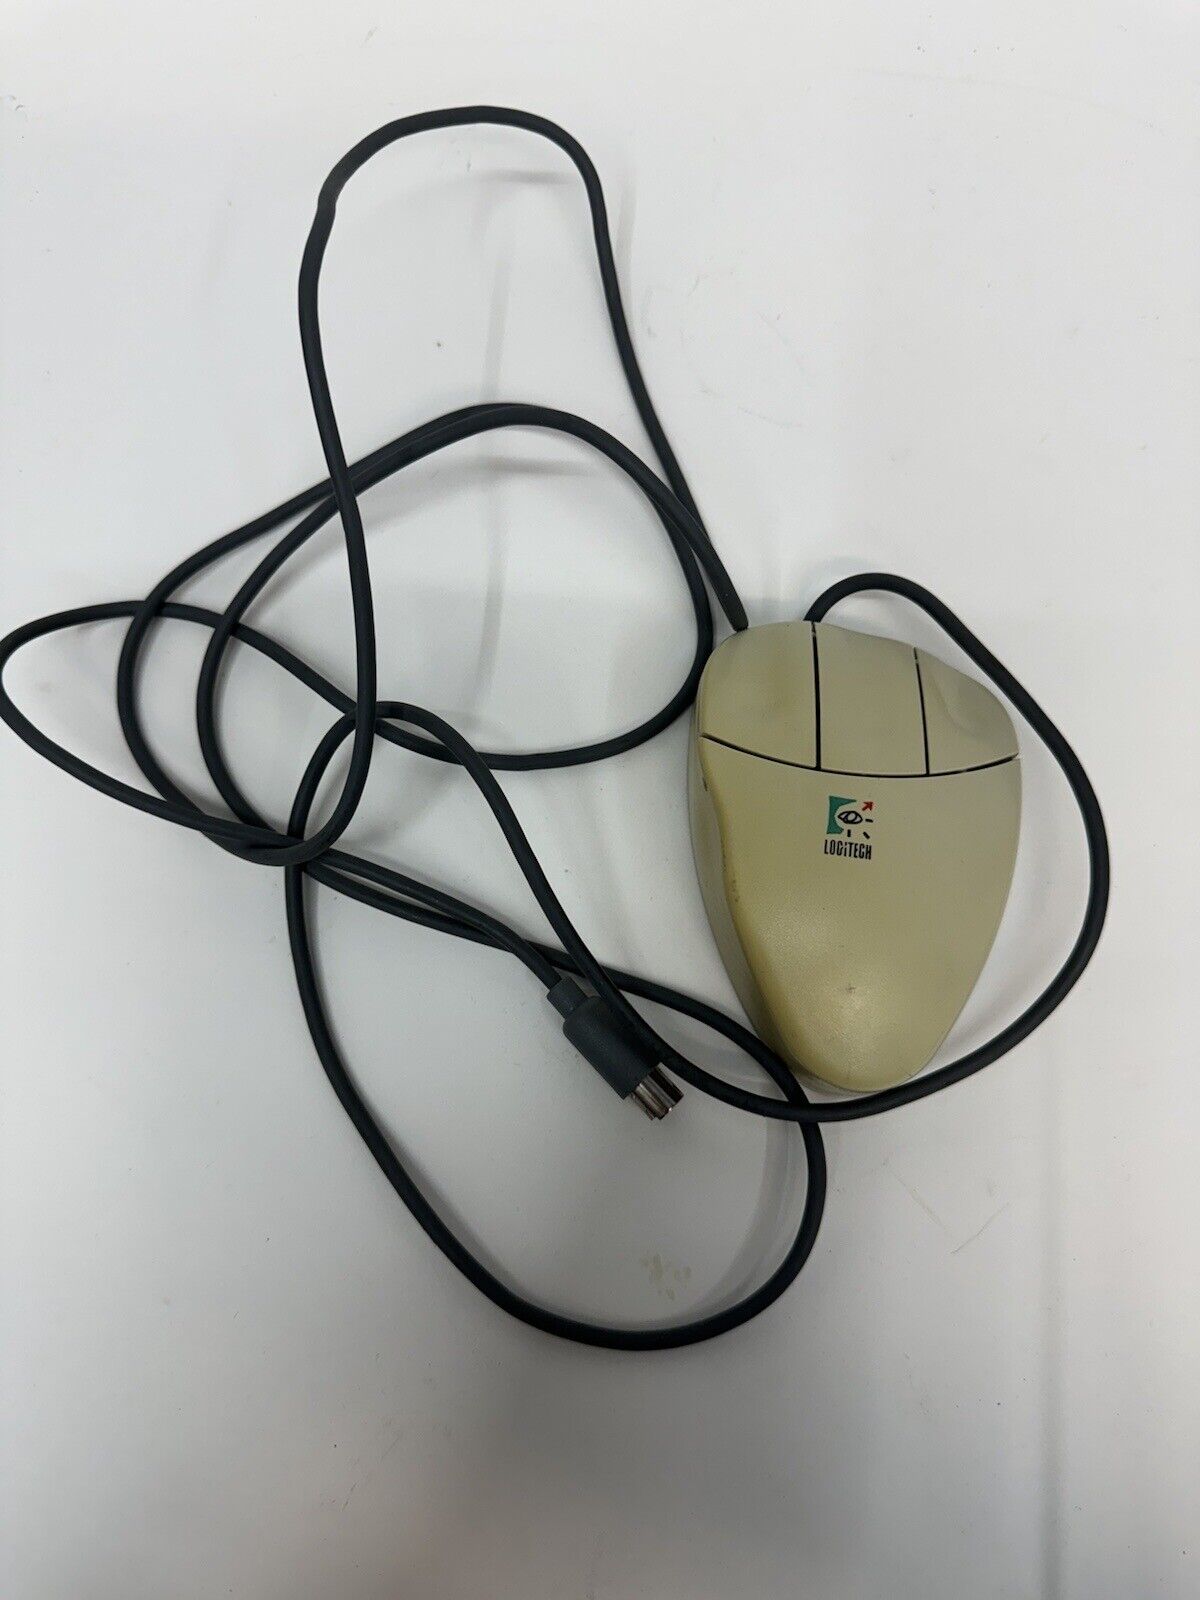 Vintage Logitech 3-Button MouseMan Serial-MousePort Mouse M-CQ38